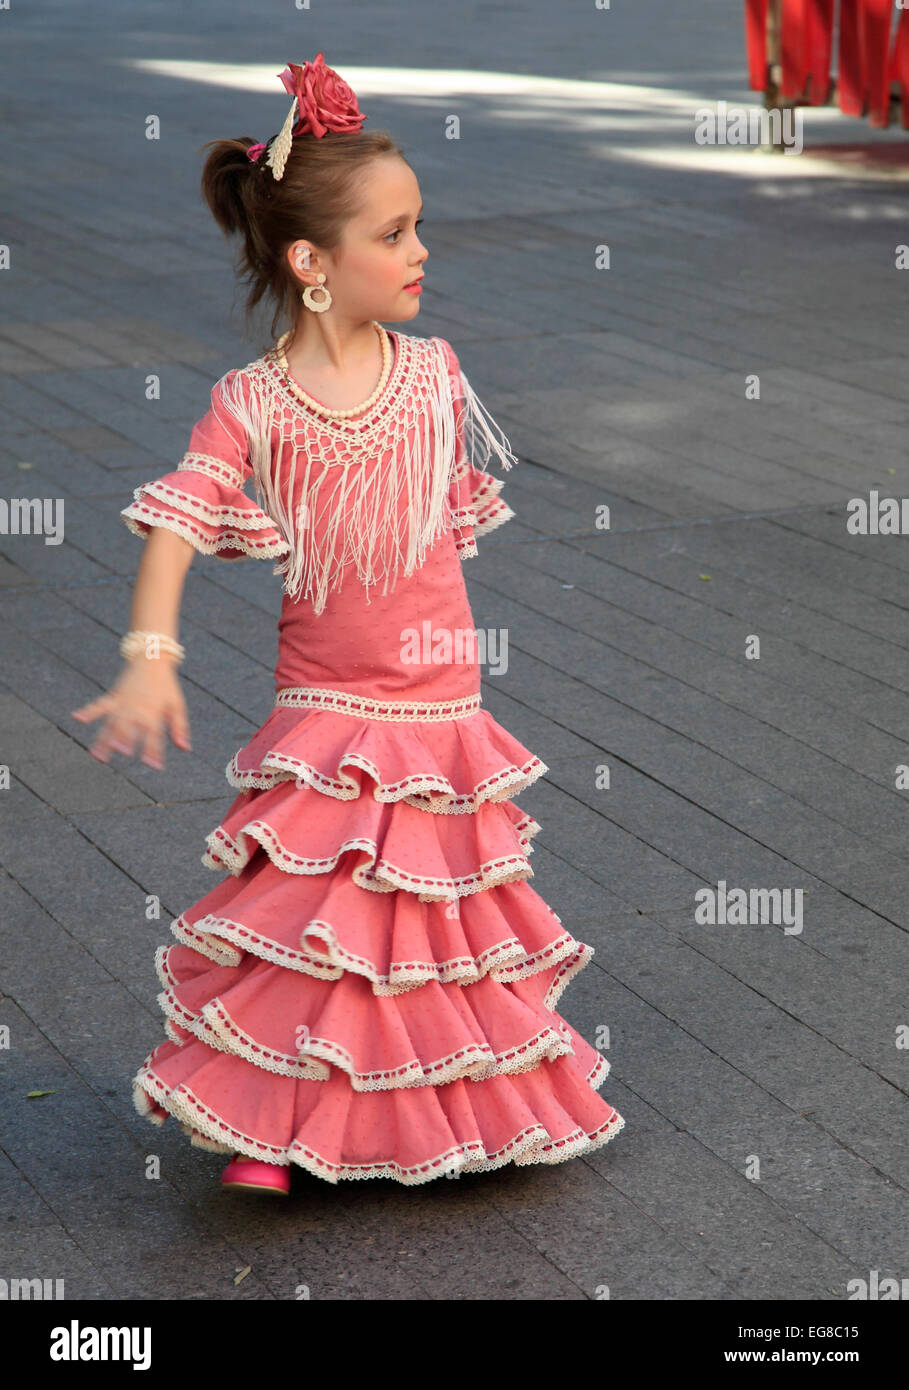 Spagna, Andalusia, Siviglia, equo, Feria de abril, persone, festival, abito tradizionale, bambina, dancing, Foto Stock